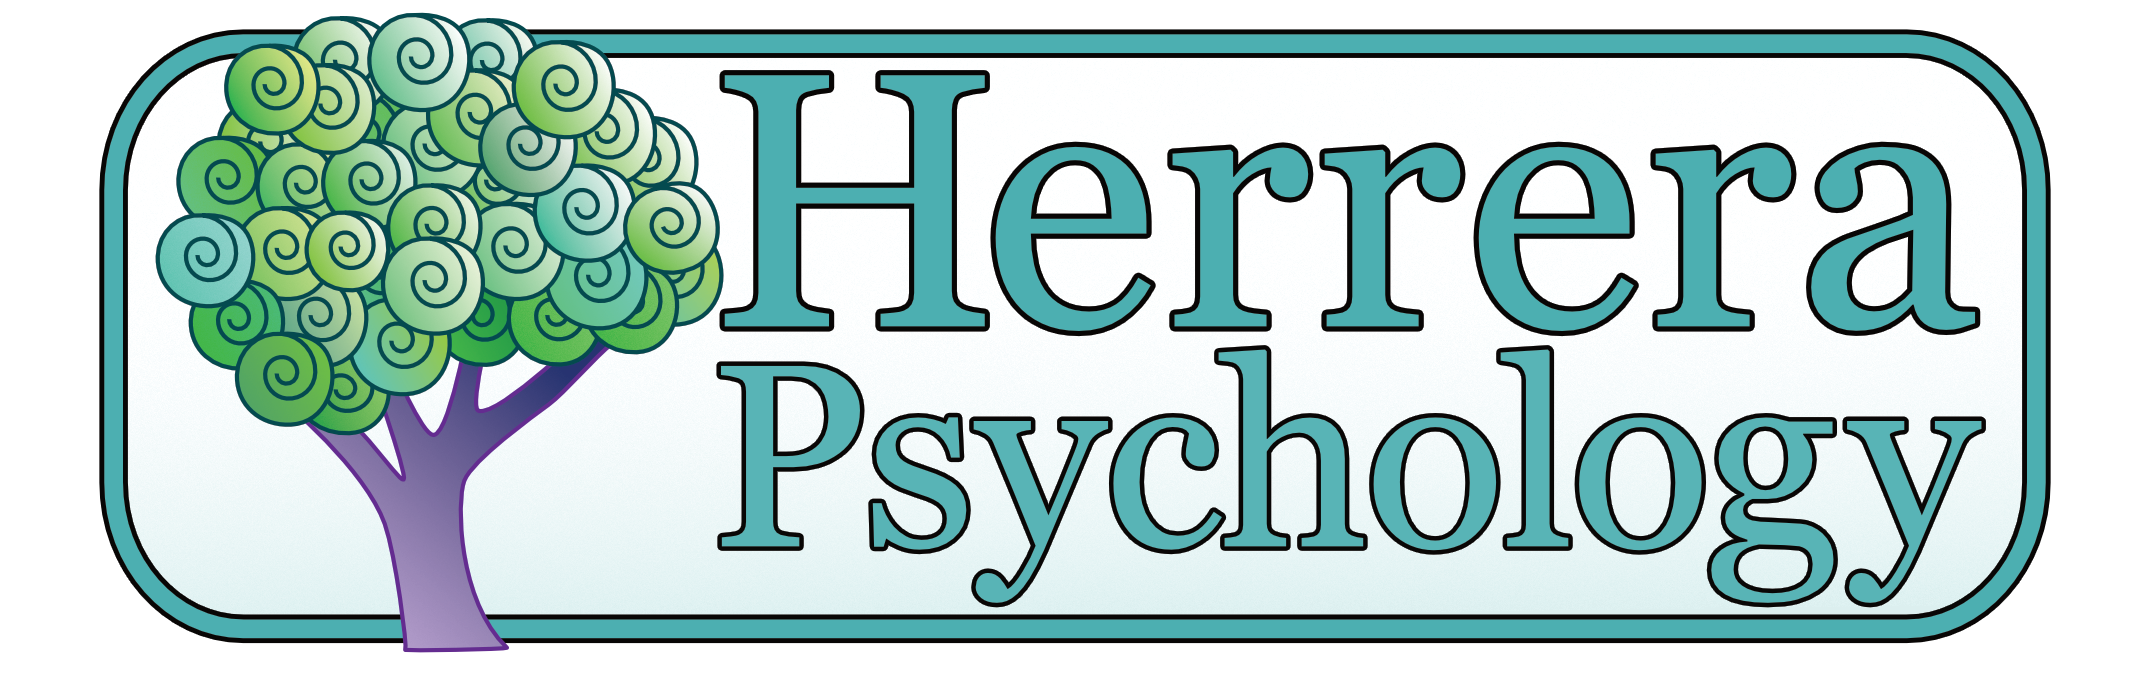 Herrera Psychology Logo